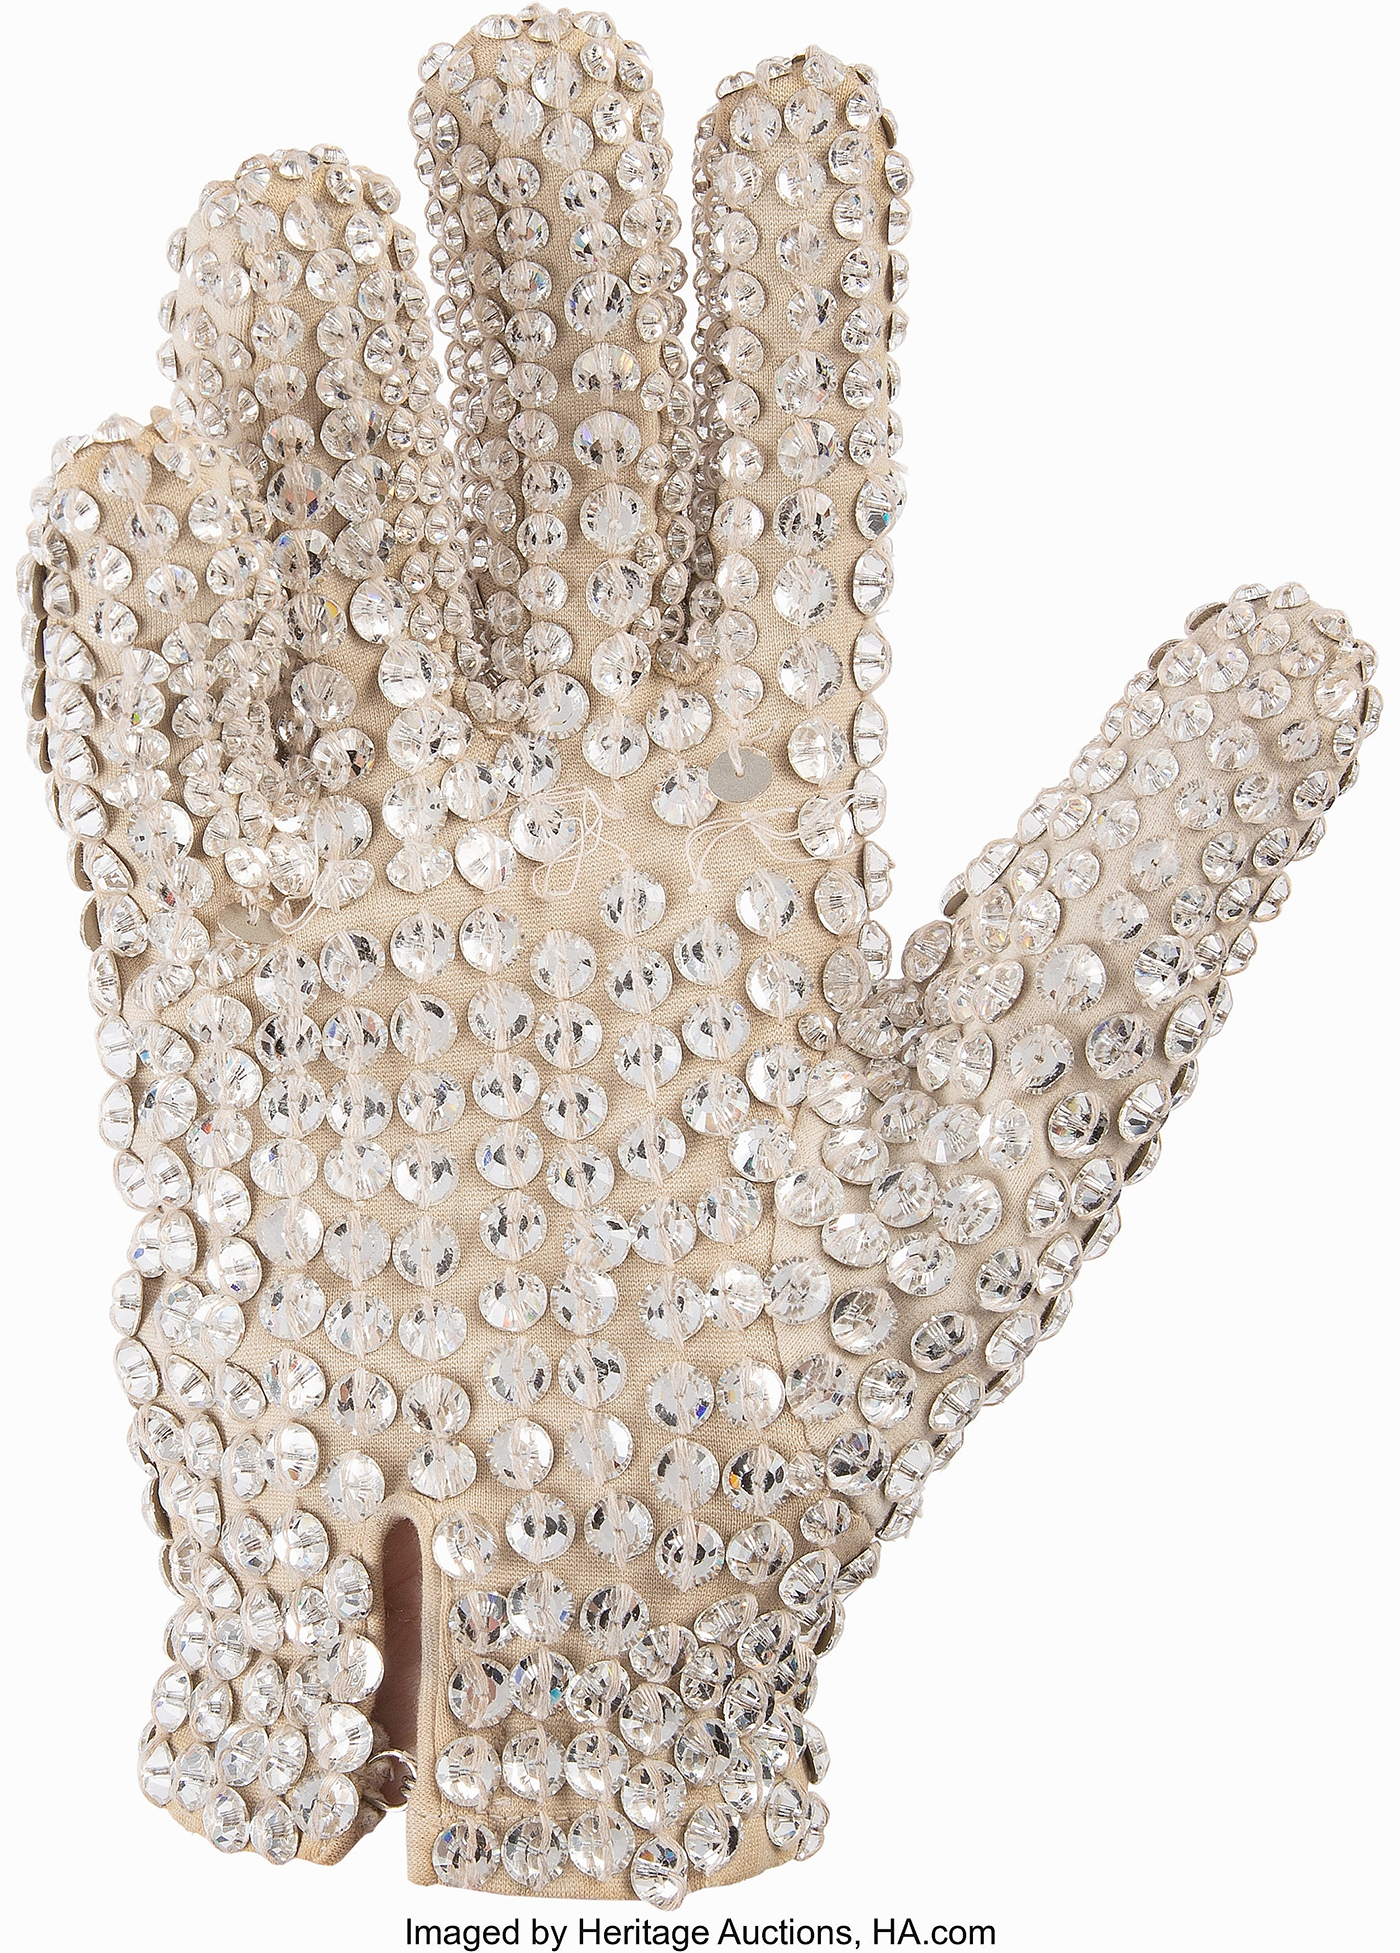 Archivo:Replica of Michael Jackson's diamond glove.png - Wikipedia, la  enciclopedia libre